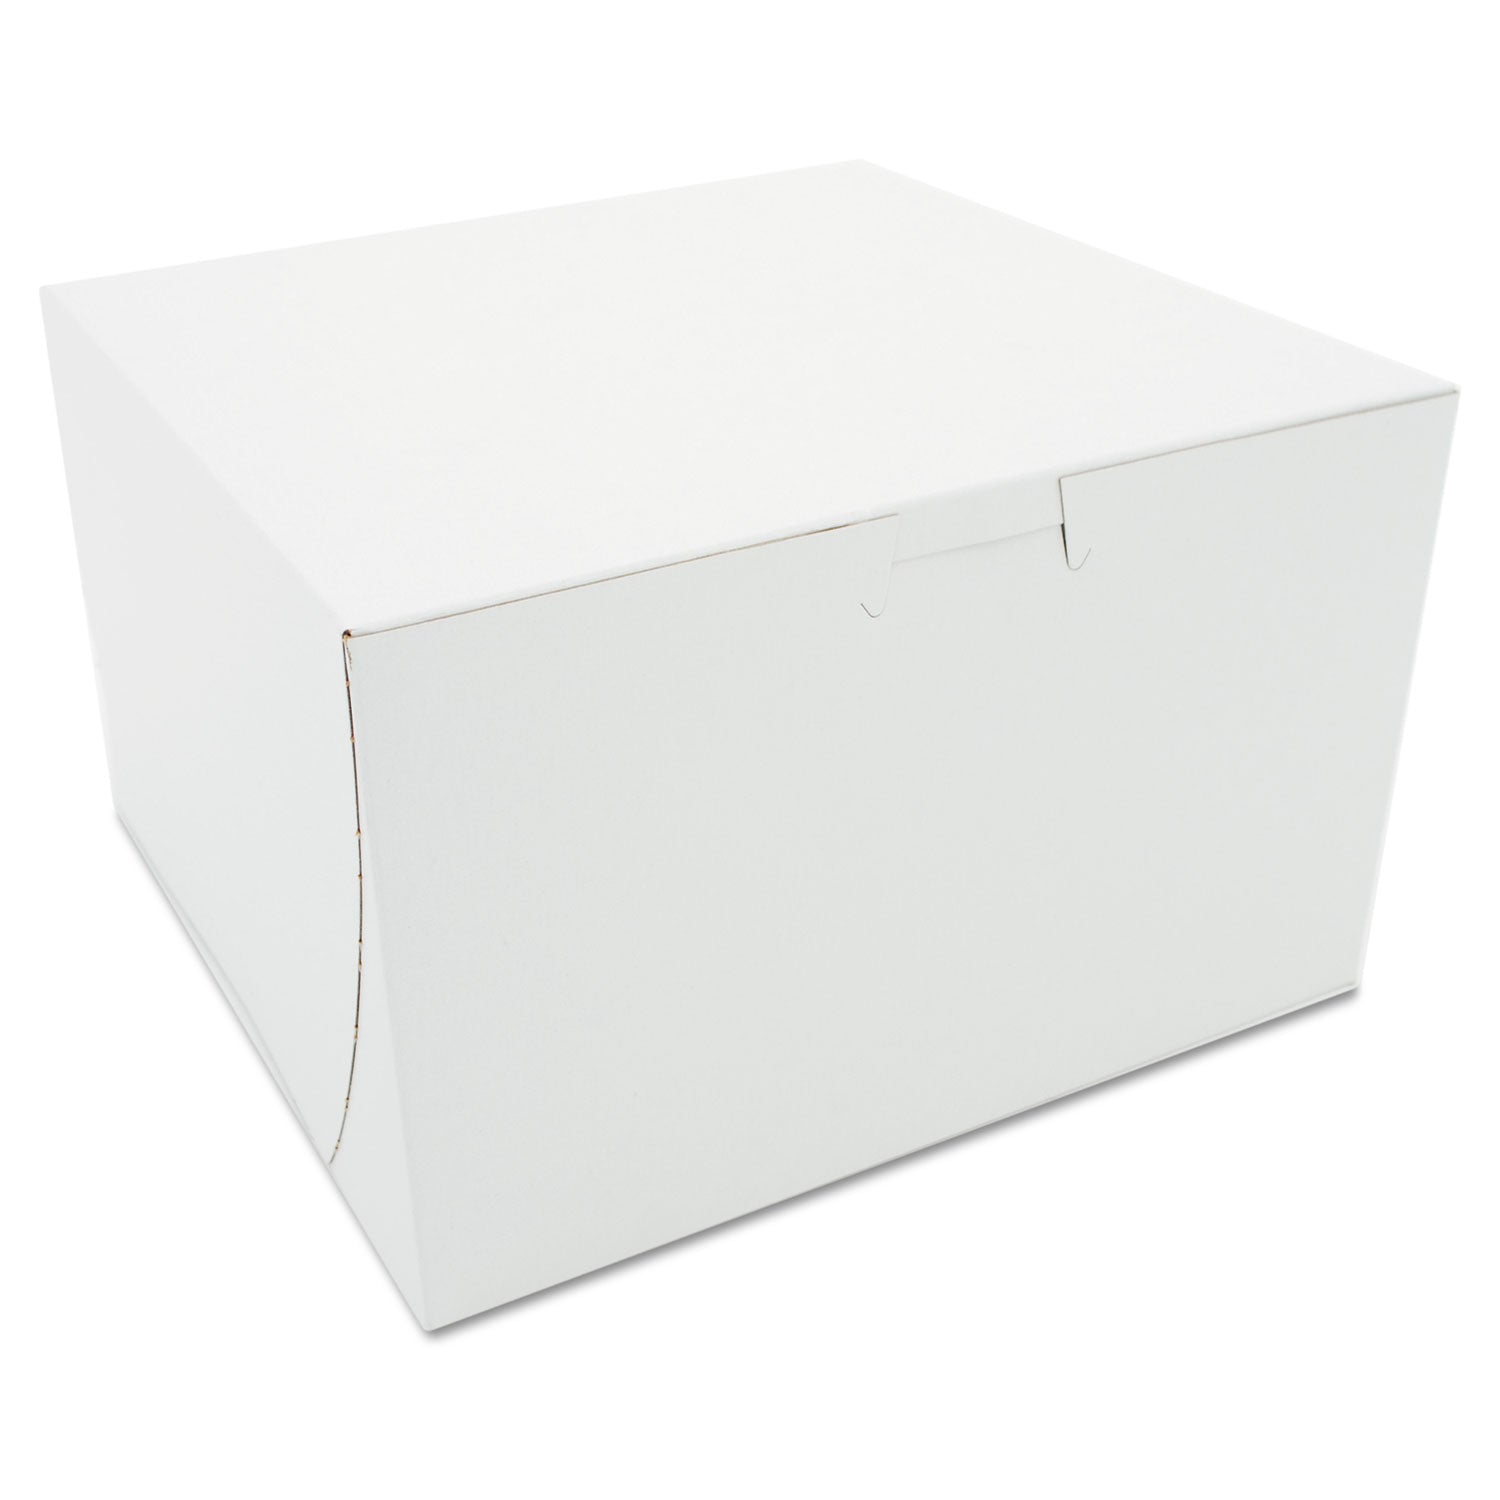 white-one-piece-non-window-bakery-boxes-8-x-8-x-5-white-paper-100-carton_sch09455 - 1